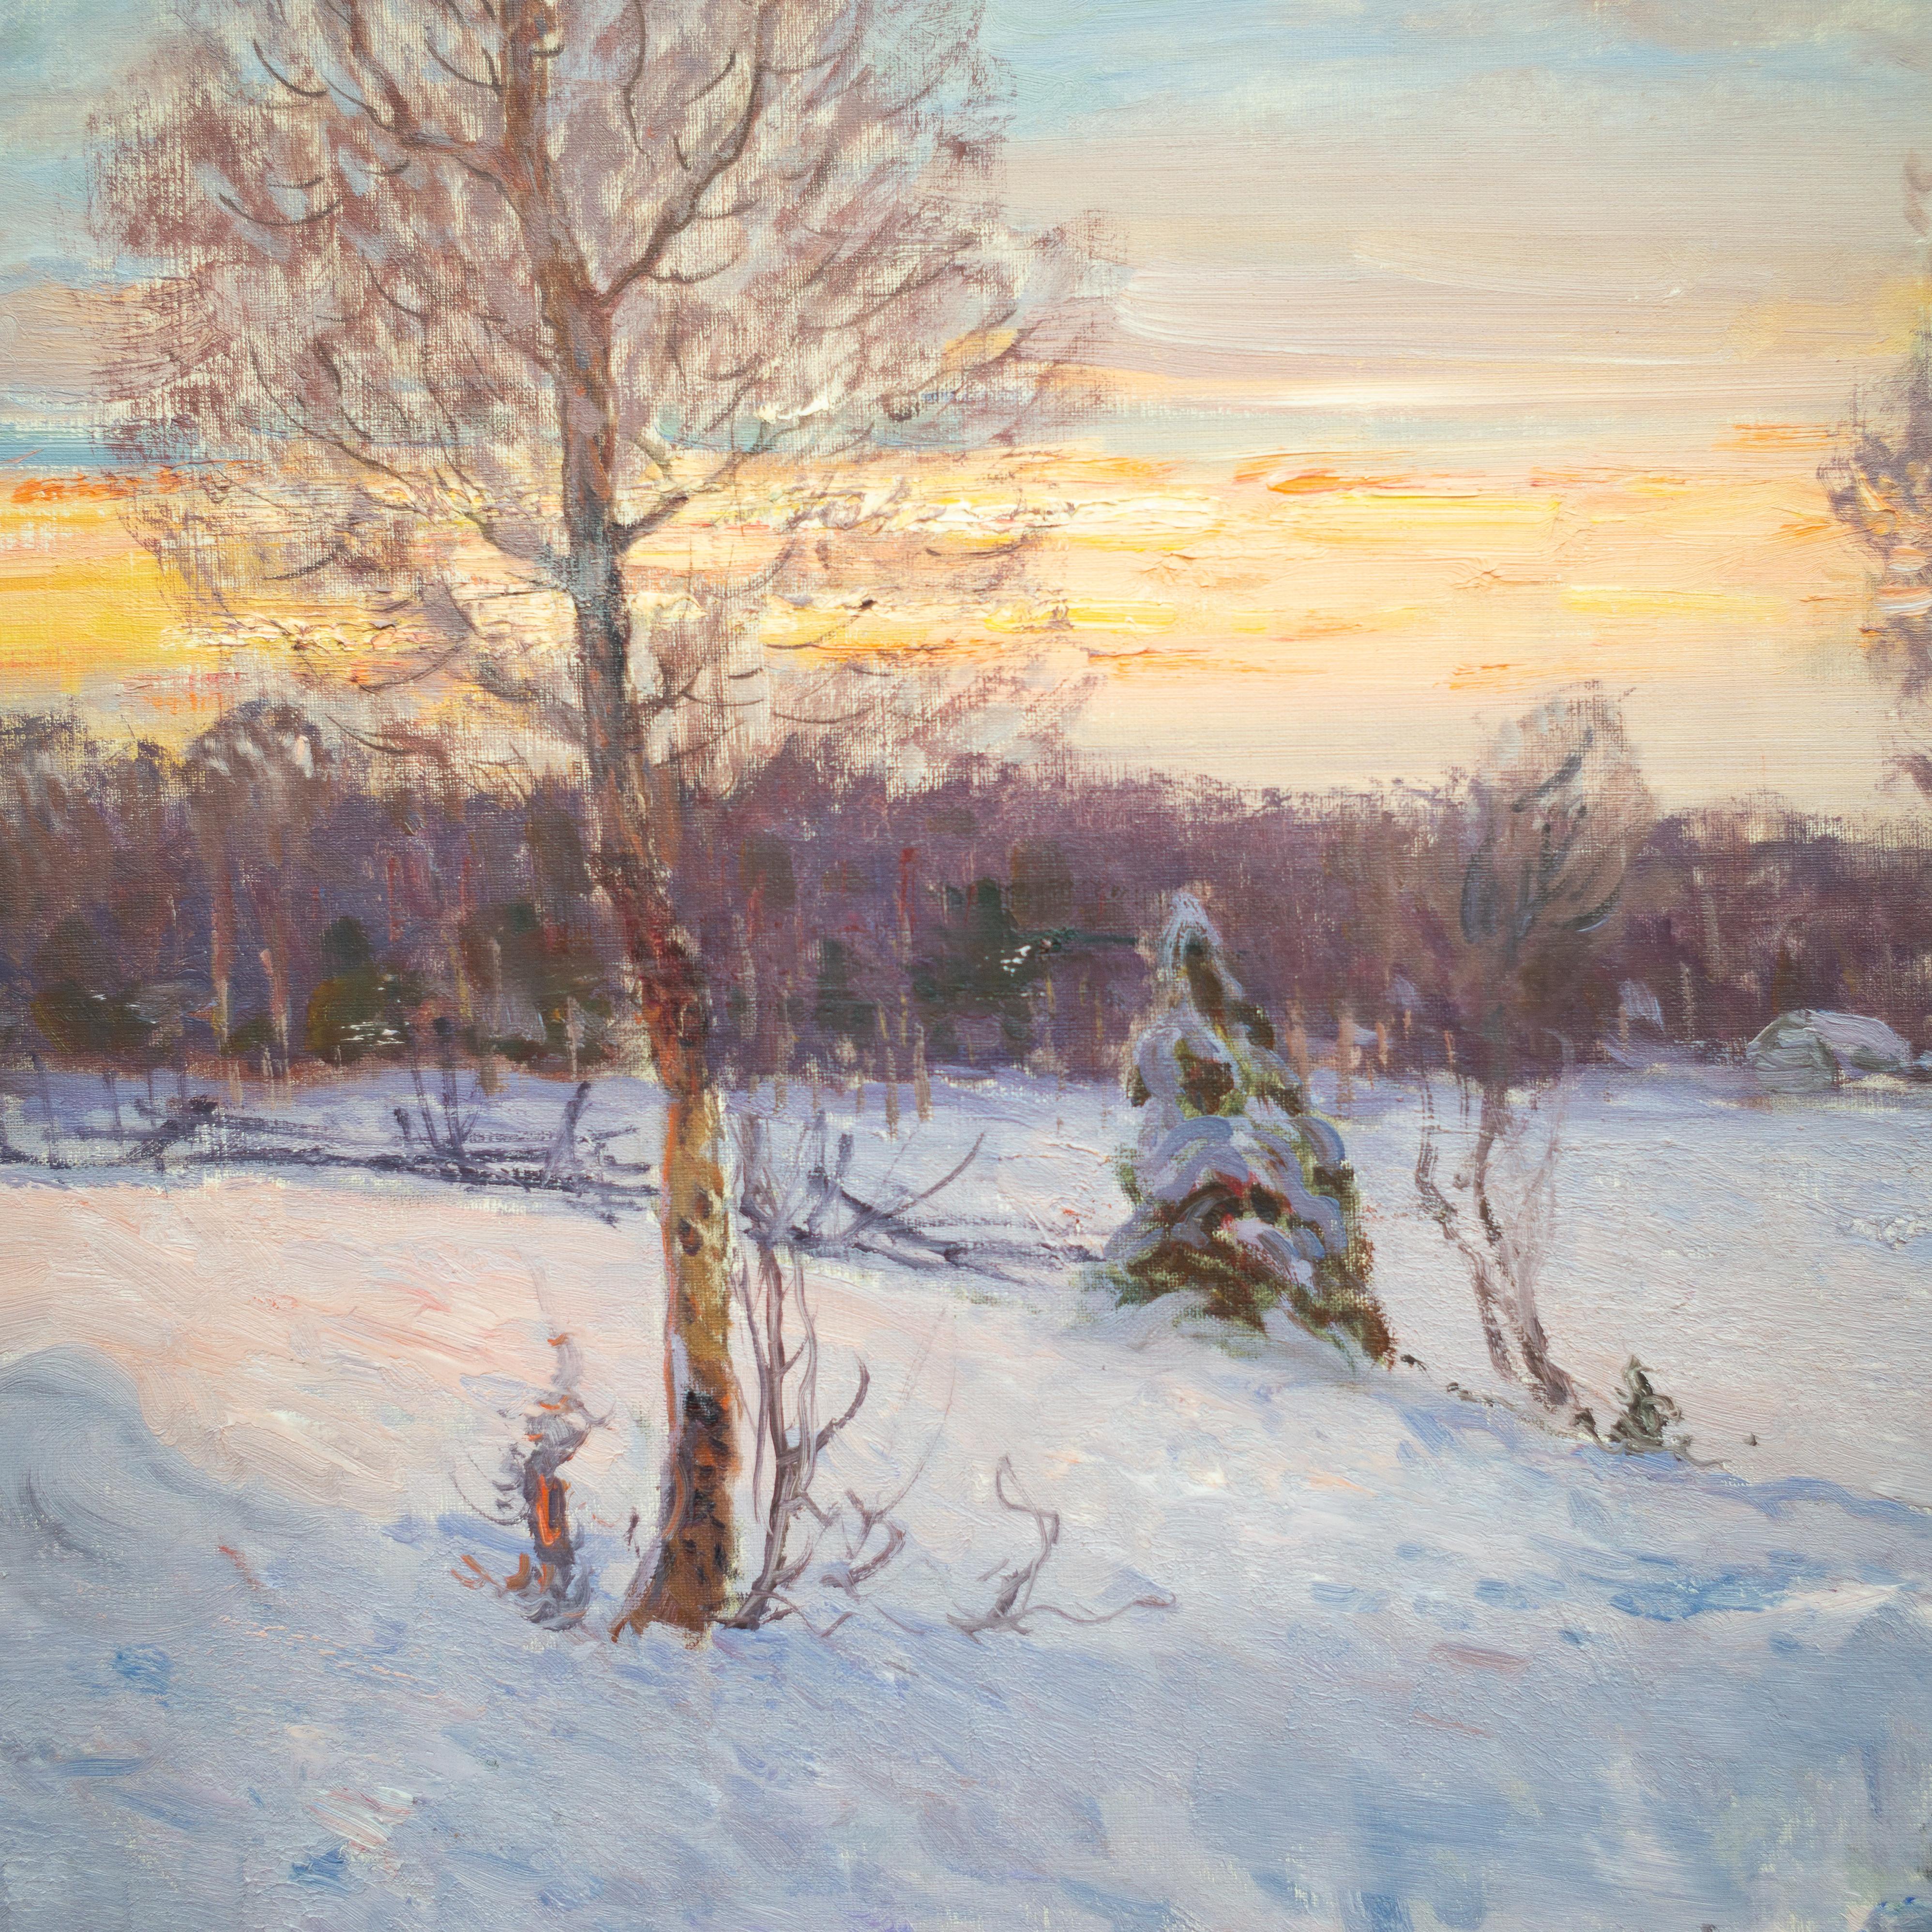 Eine herrliche Winterlandschaft des schwedischen Künstlers Anton Genberg (1862-1939).
Auf diesem Gemälde aus dem Jahr 1912 sehen wir die charakteristischen Merkmale, die ihn so berühmt gemacht haben. 
Wie die frühere Impressionismus-Bewegung wurde